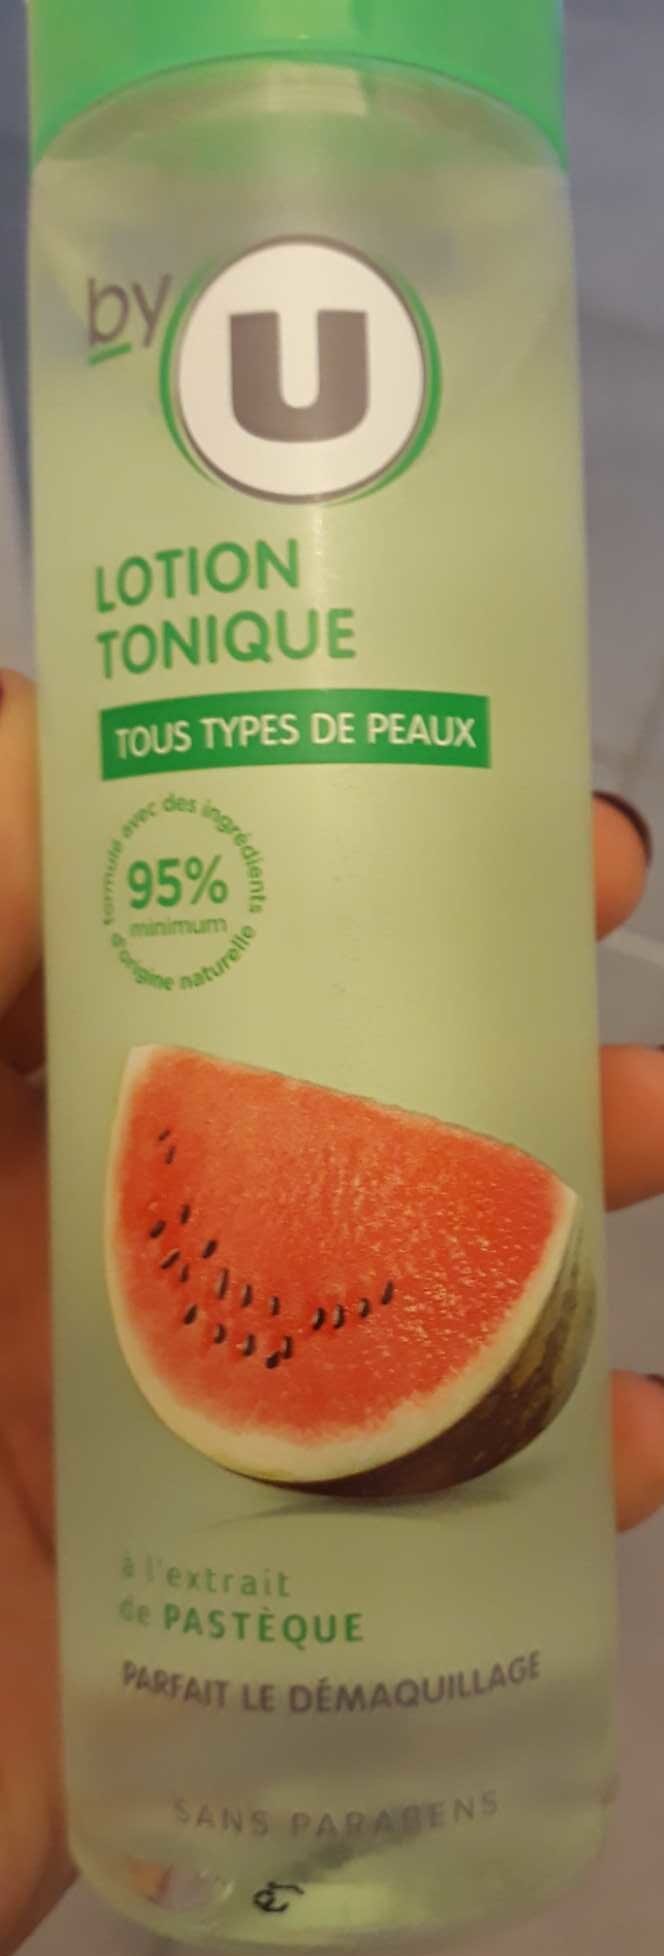 Lotion tonique - Ingredients - fr